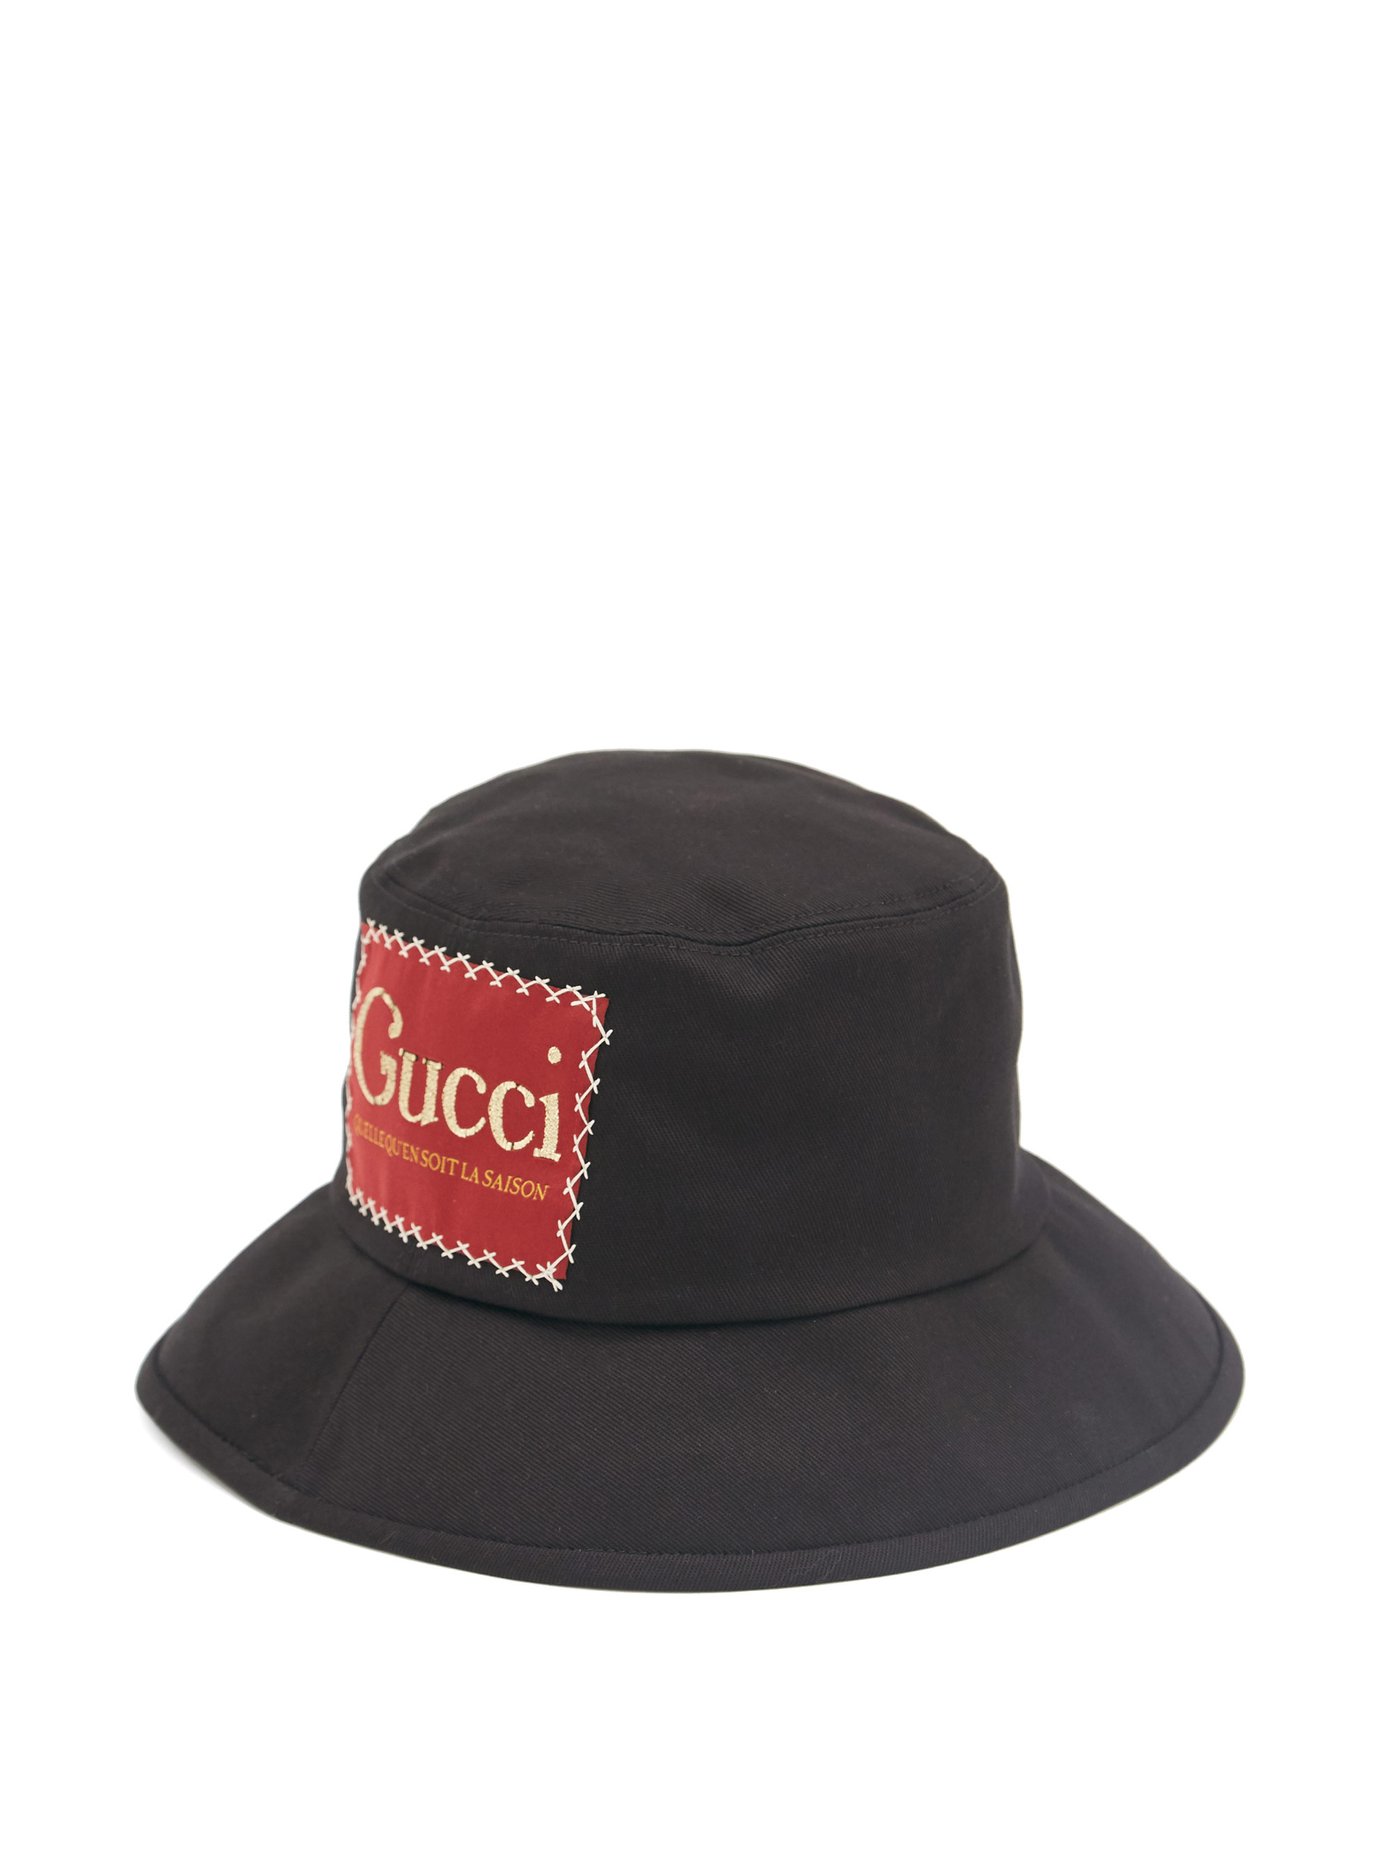 gucci boonie hat